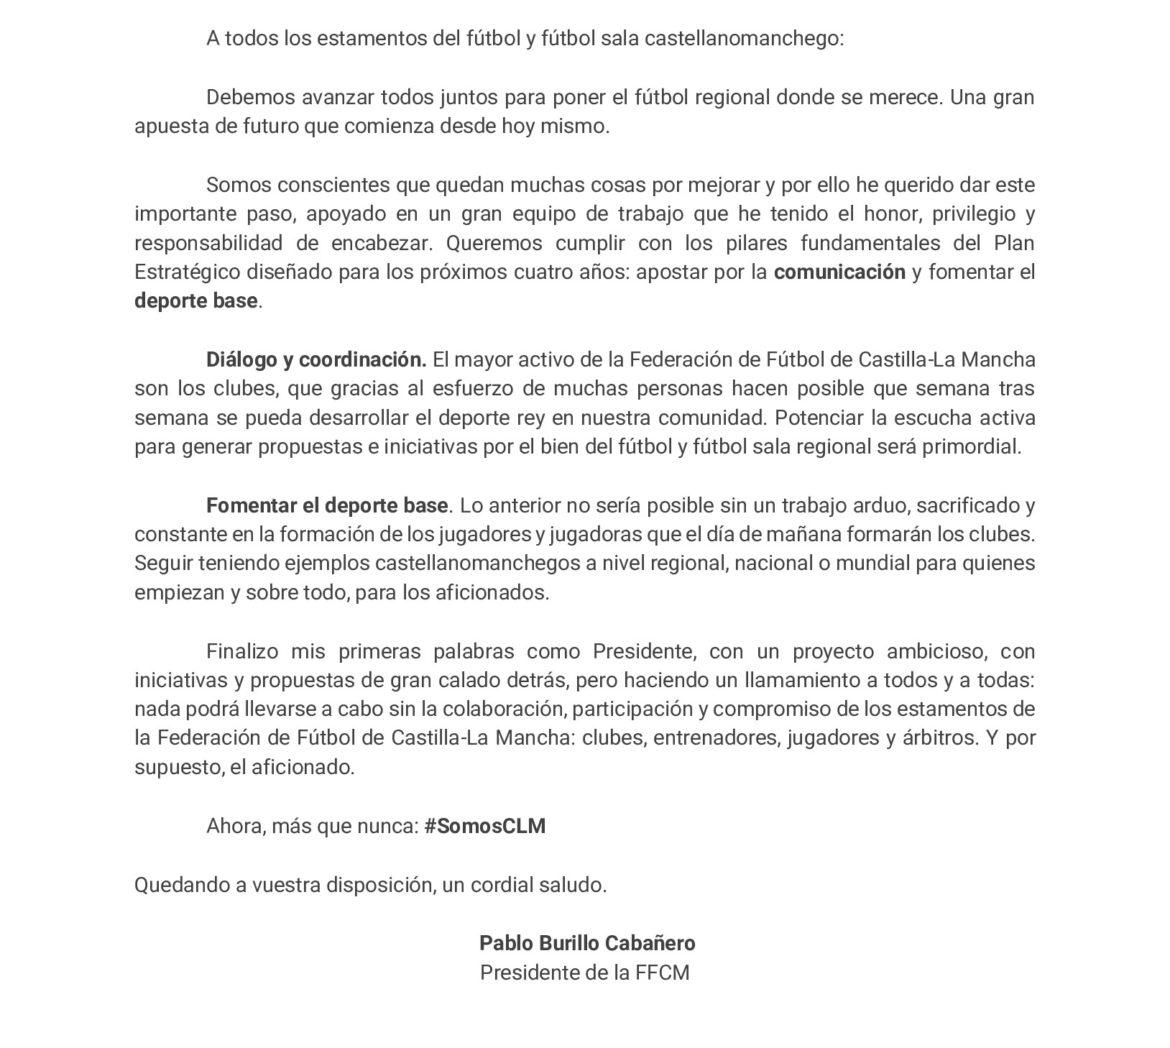 Primer mensaje de Pablo Burillo al mando de la FFCM